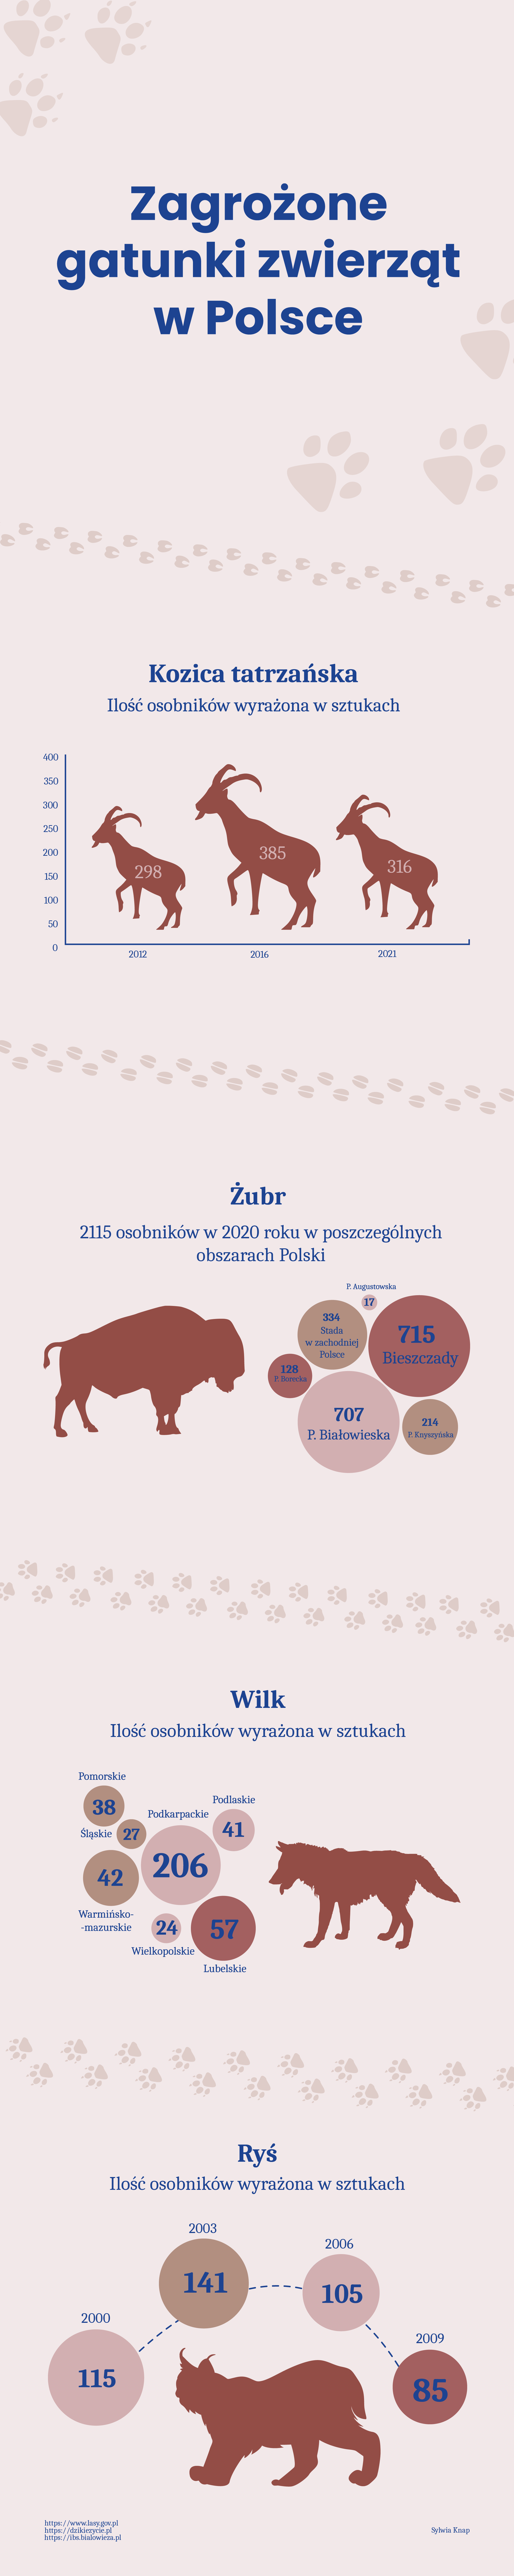 Zagrożone gatunki zwierzat w Polsce1